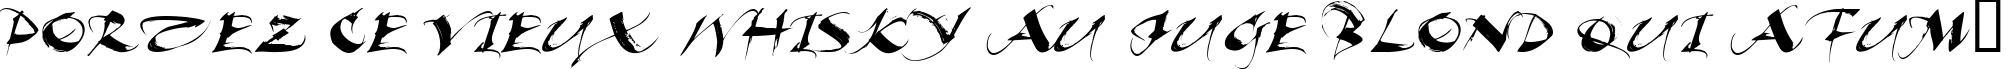 Пример написания шрифтом Beautiful Ink текста на французском